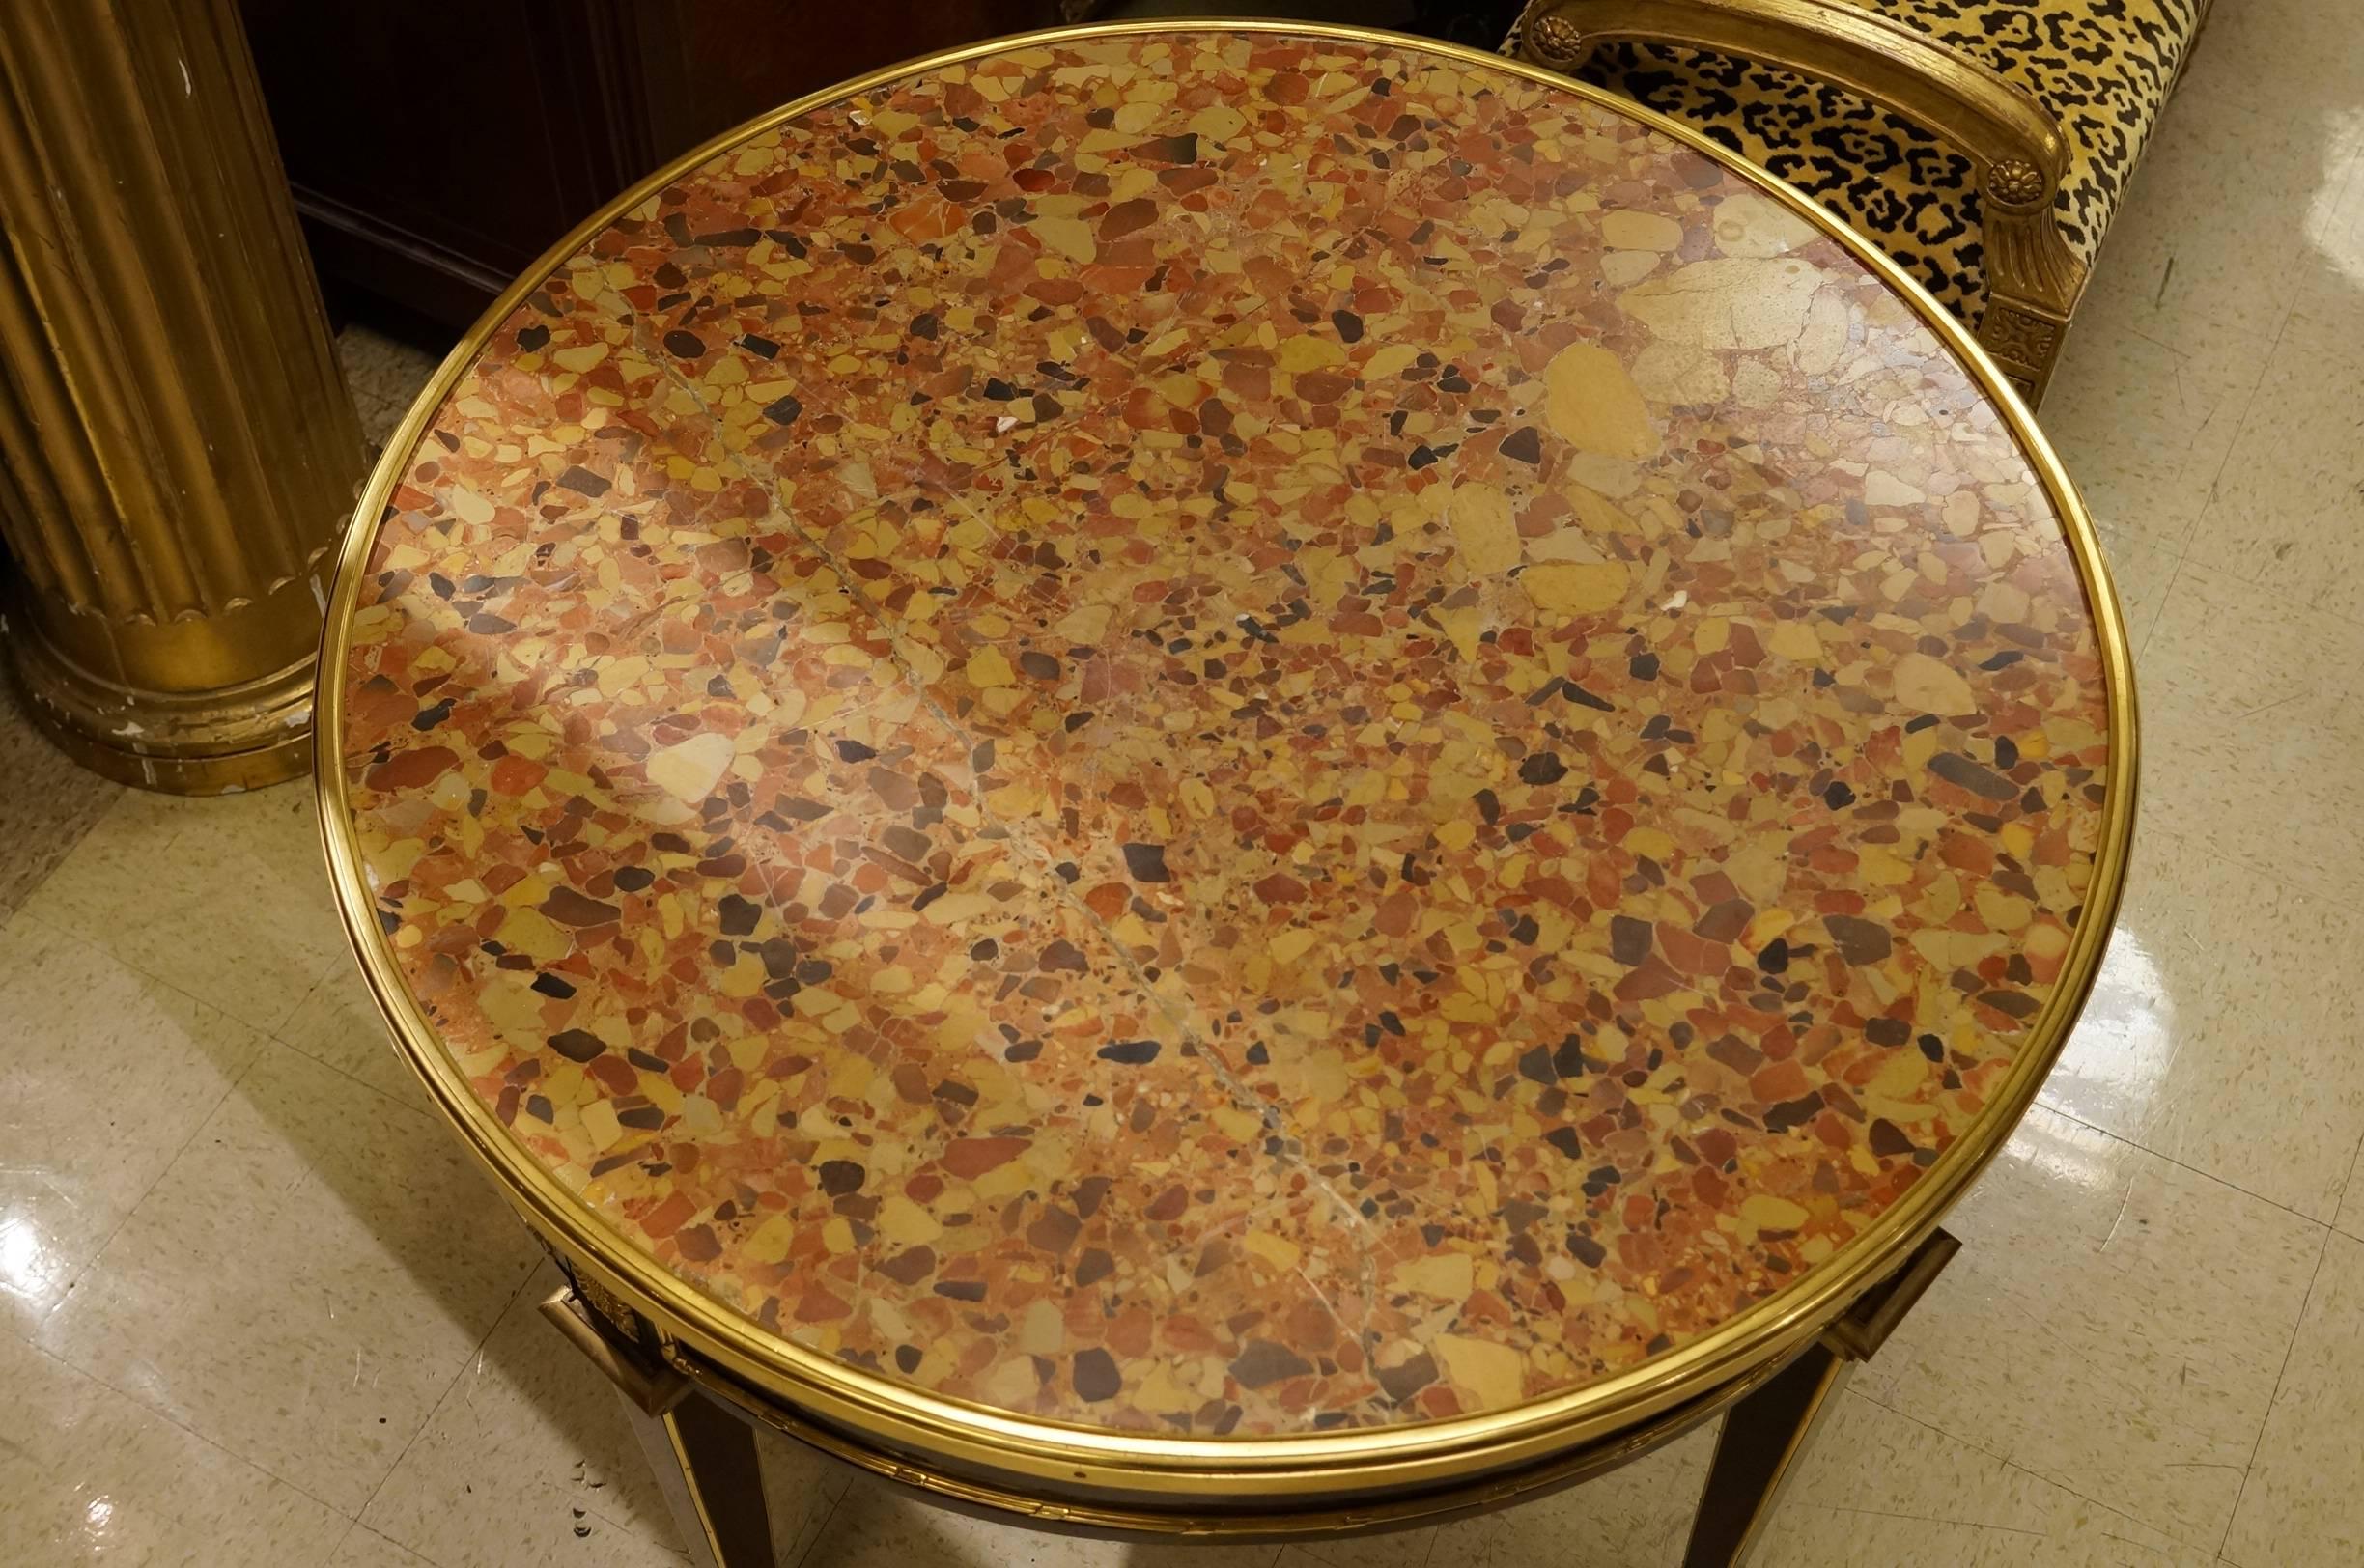 Table de centre ronde de style Louis XVI, de style français ancien, à plateau en marbre, avec montures en bronze doré.

Numéro de stock : F117.